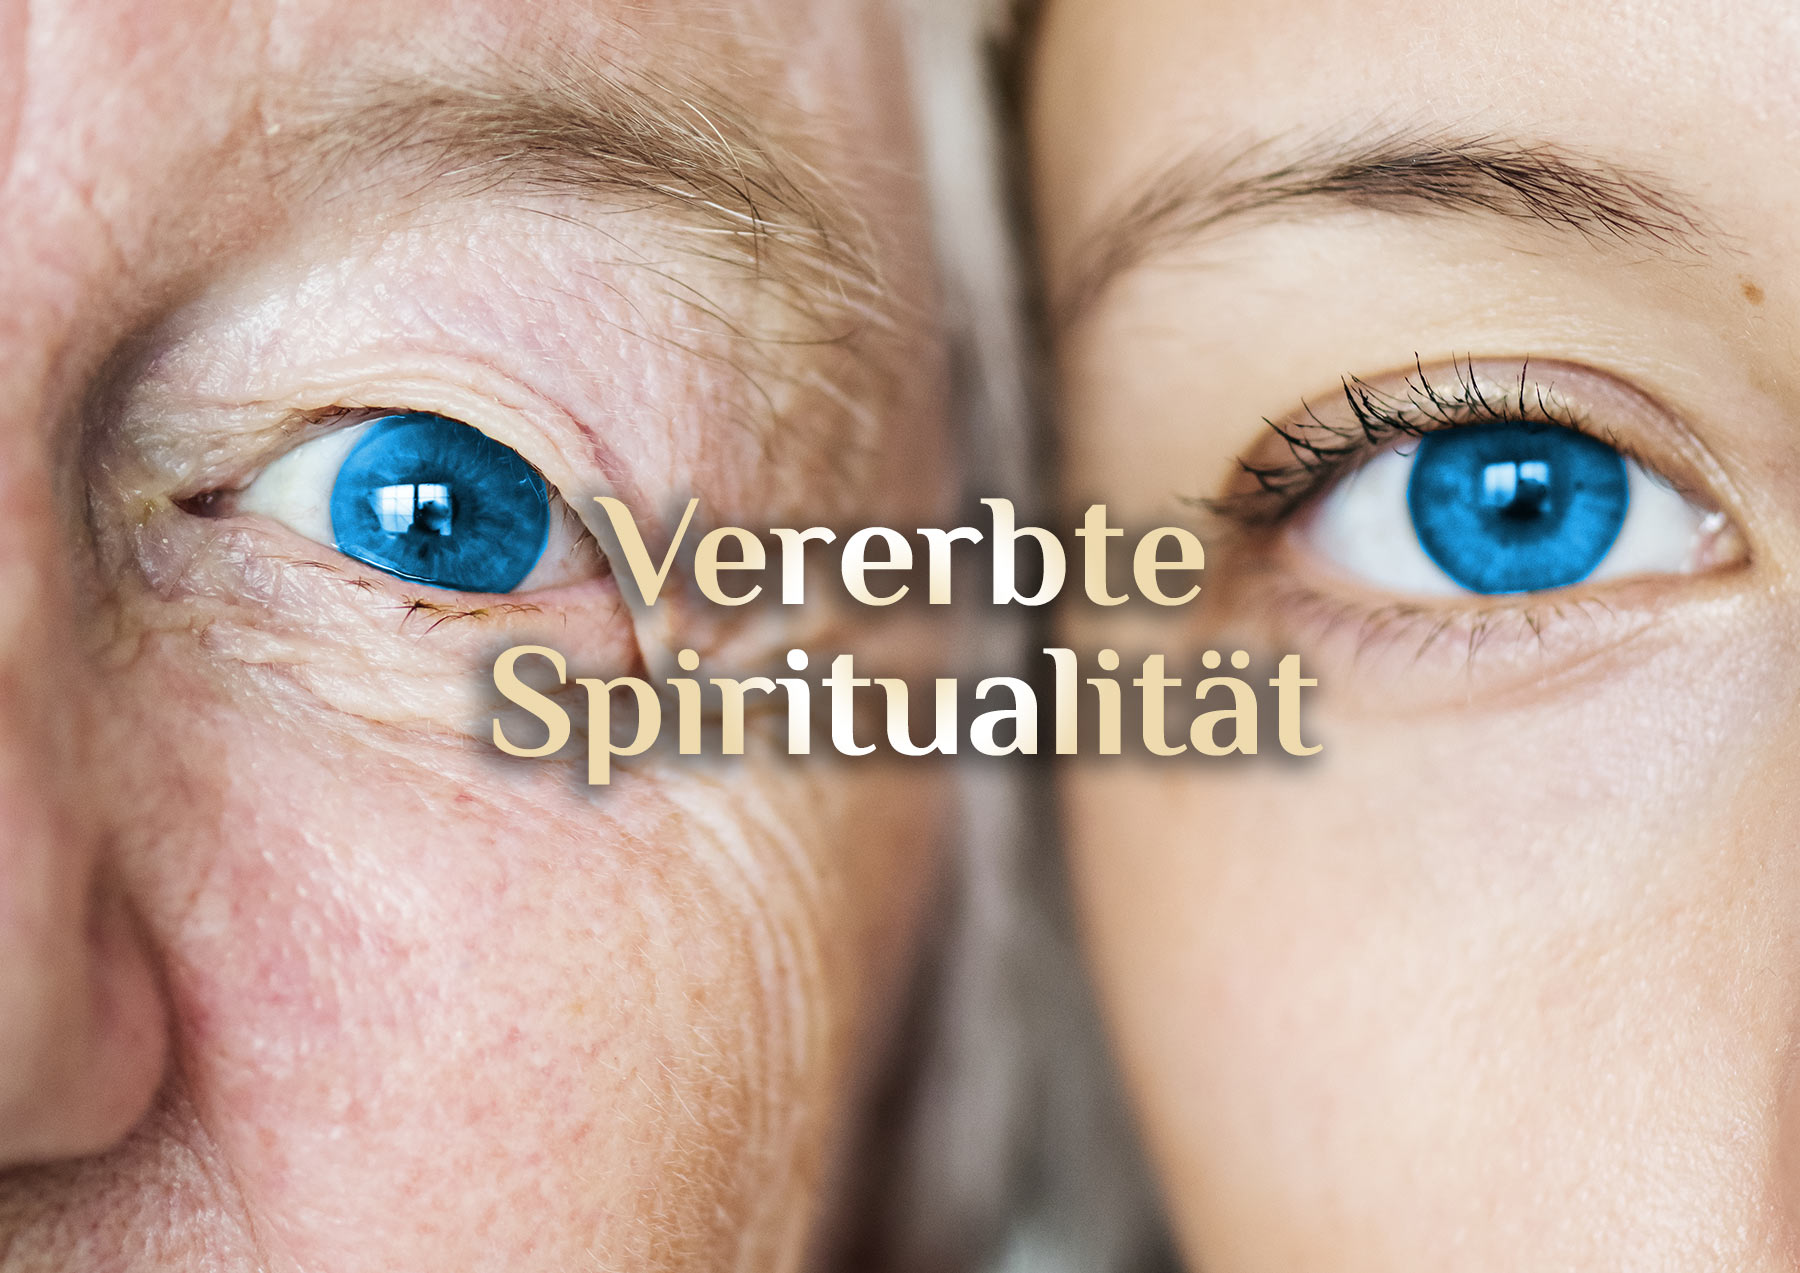 Vererbte Spiritualität 🧬  ist das möglich? 🧬 Epigentik